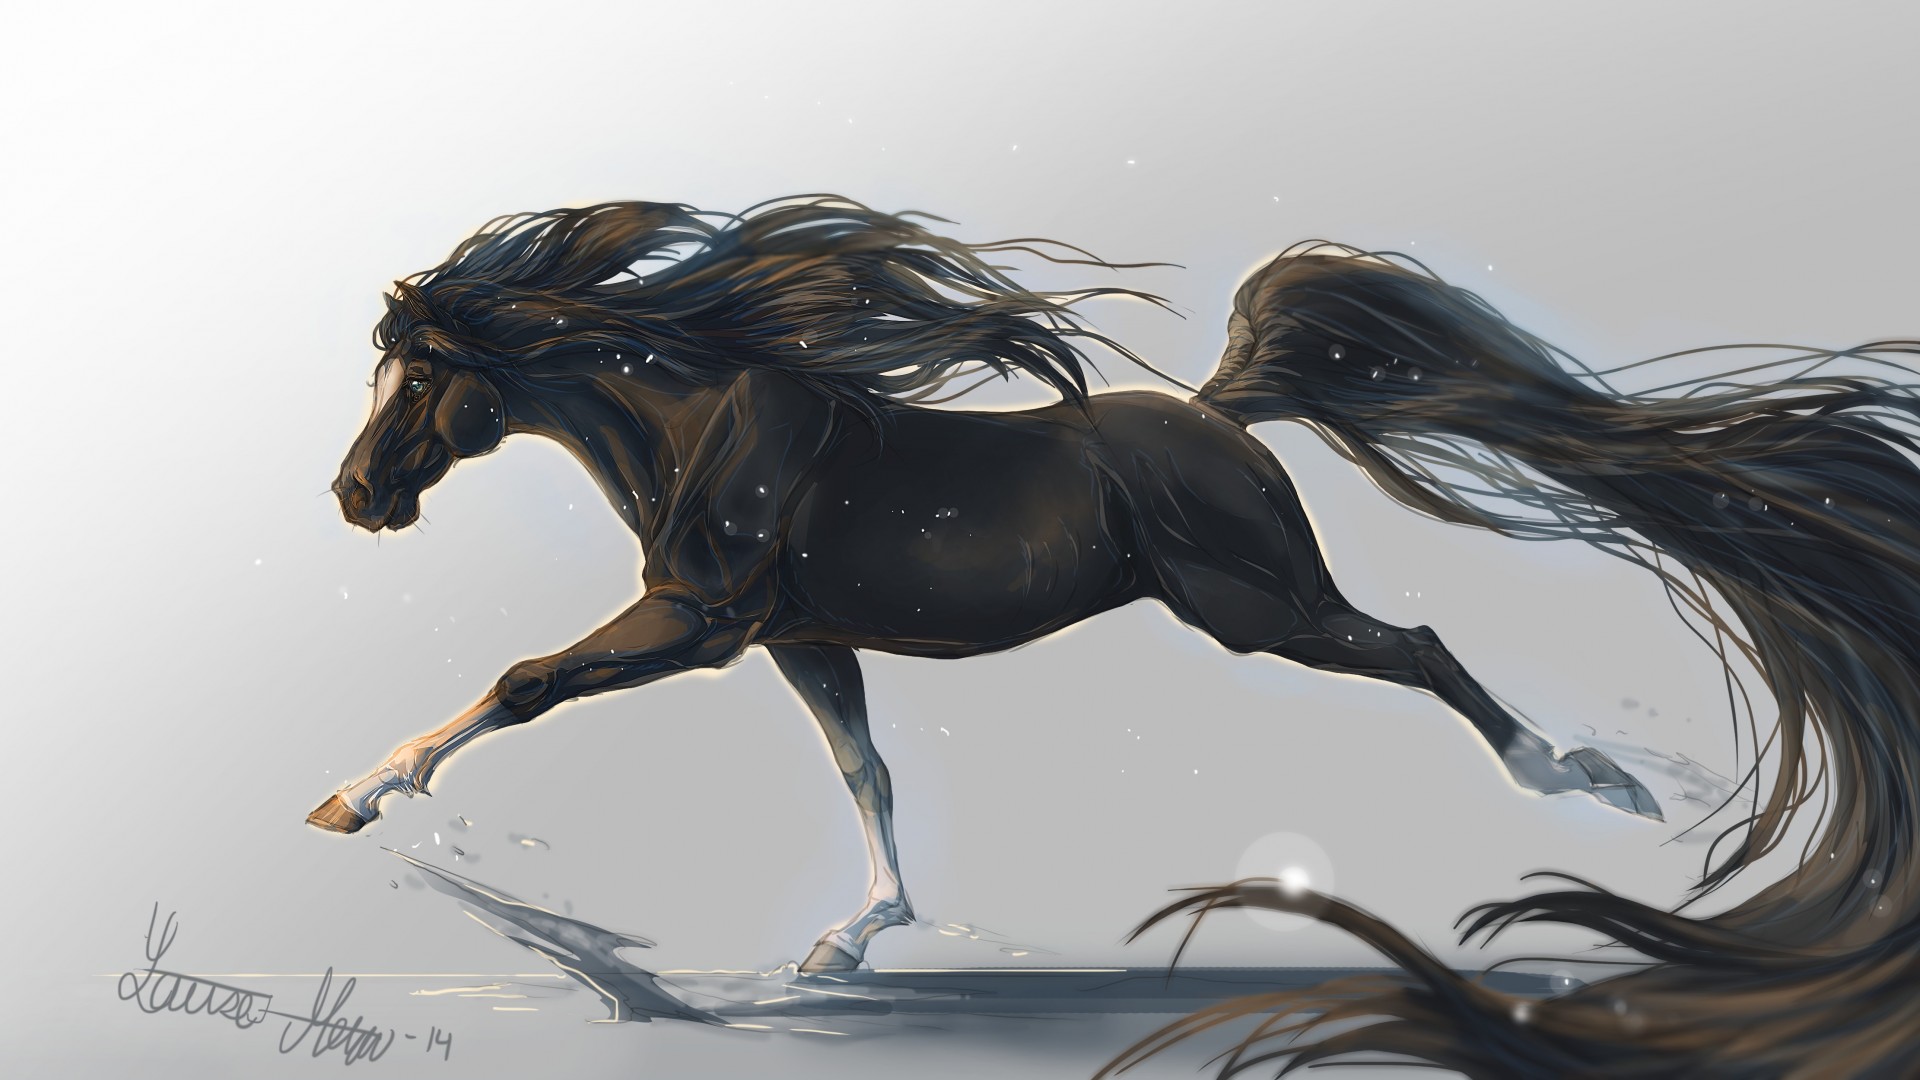 лошадь, 5k, 4k, копыта, грива, скачет, черная, белый фон, арт, horse, hooves, 5k, 4k wallpaper, mane, galloping, black, white background, art,  (horizontal)